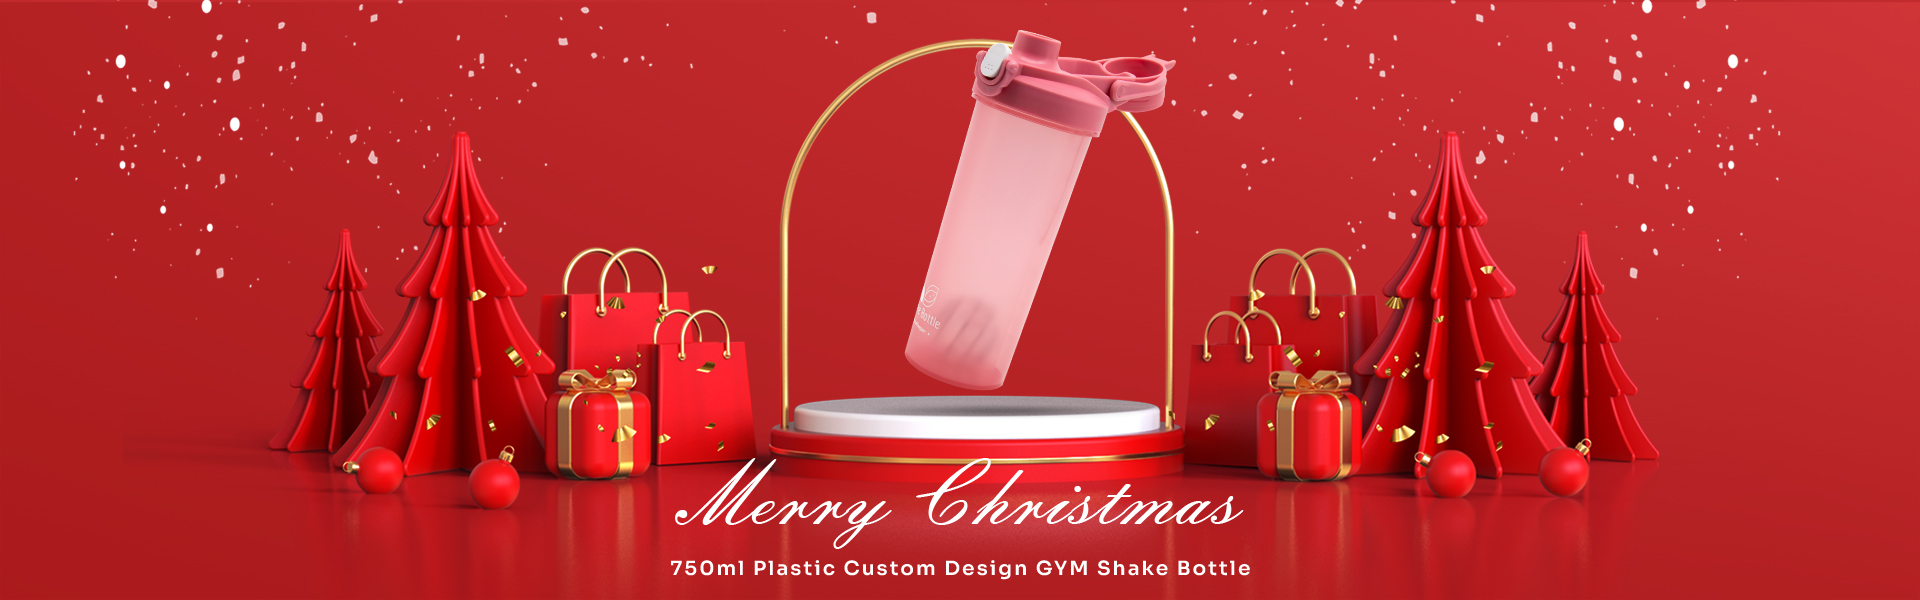 Garrafa de shake de ginástica com design personalizado de plástico de 750ml